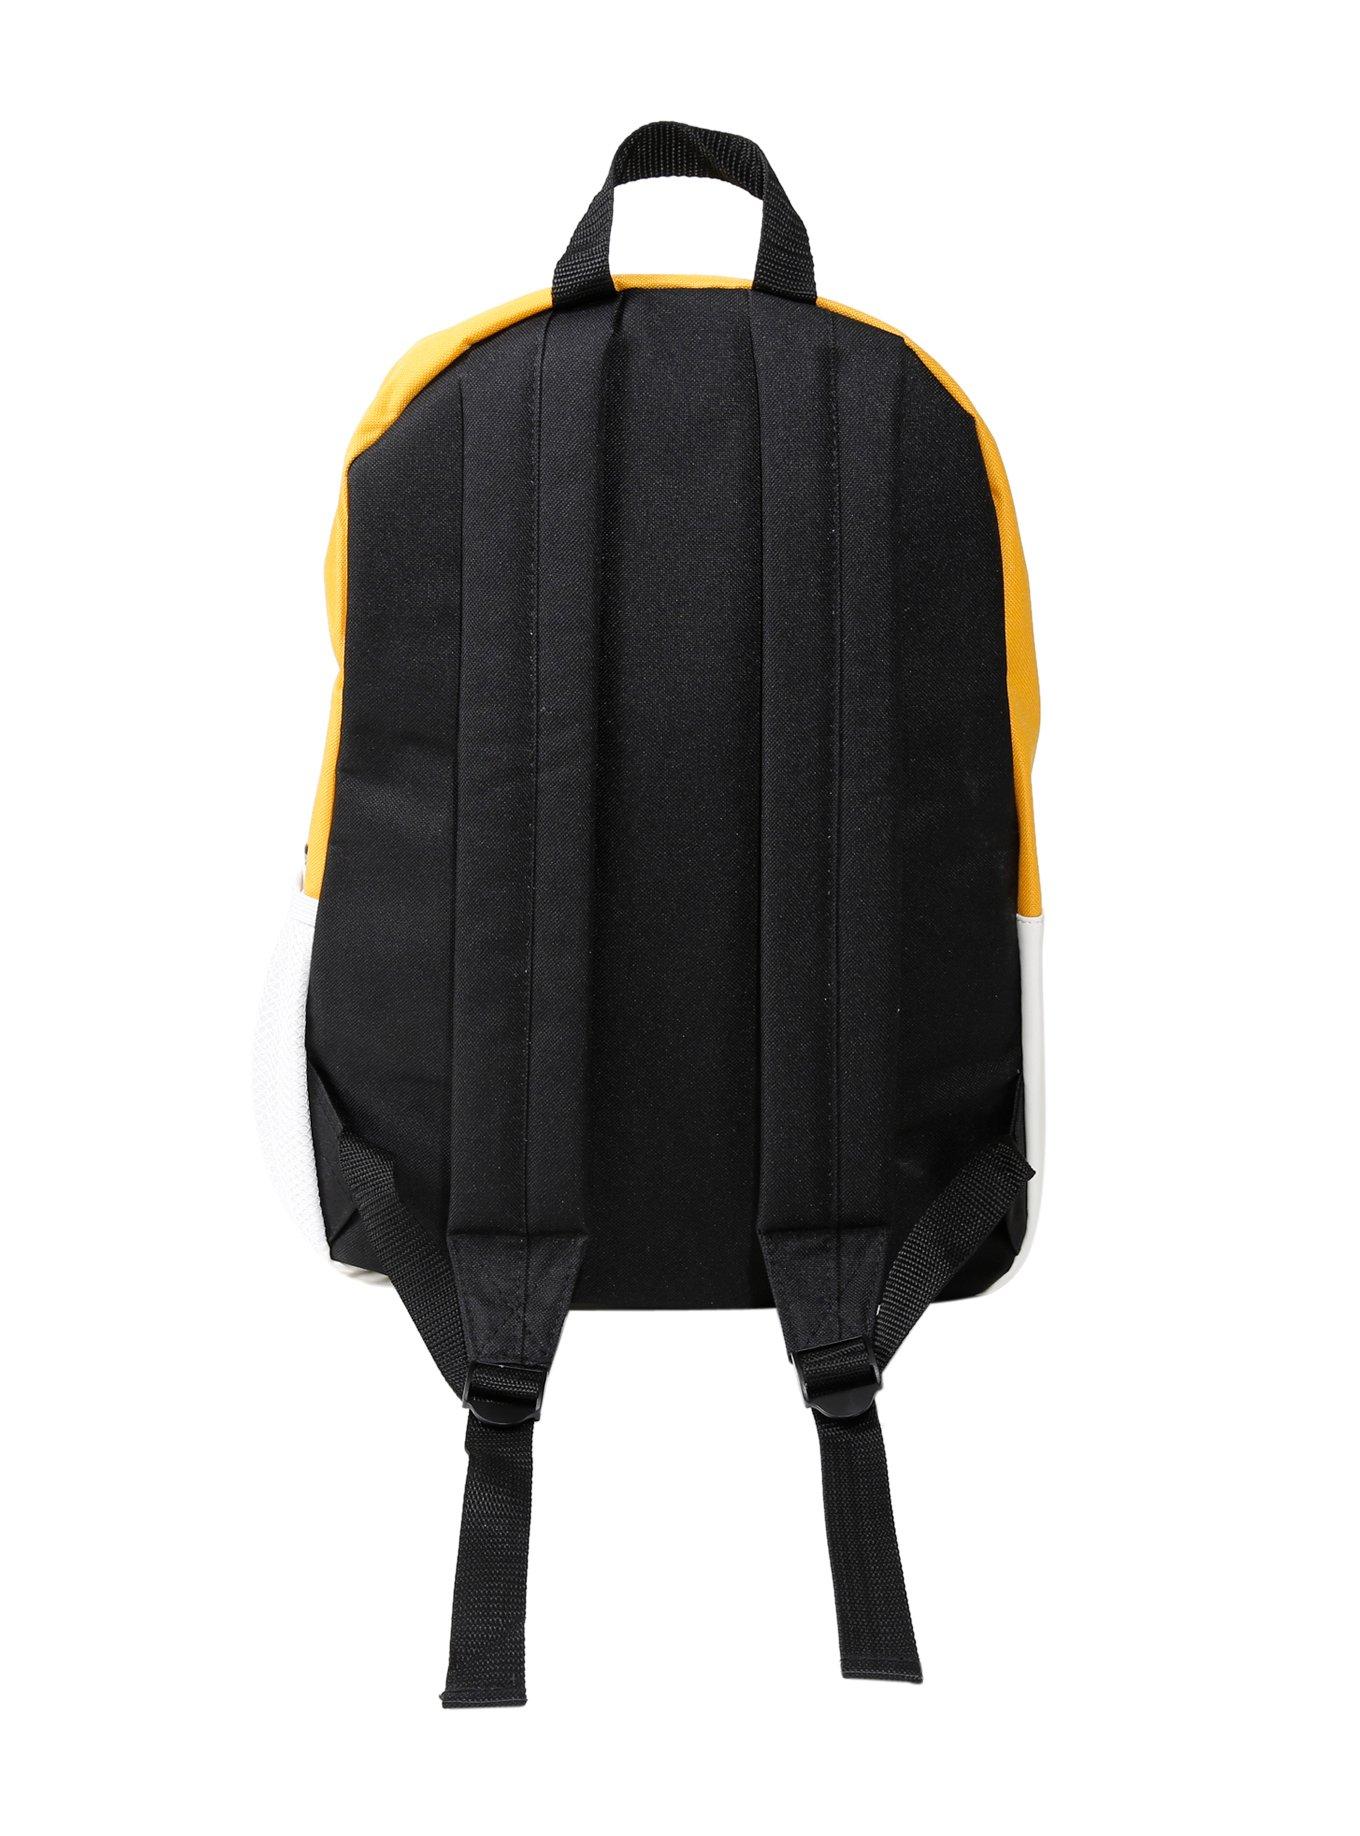 Hot Topic Loungefly Gudetama Egg Print Backpack : : Bags